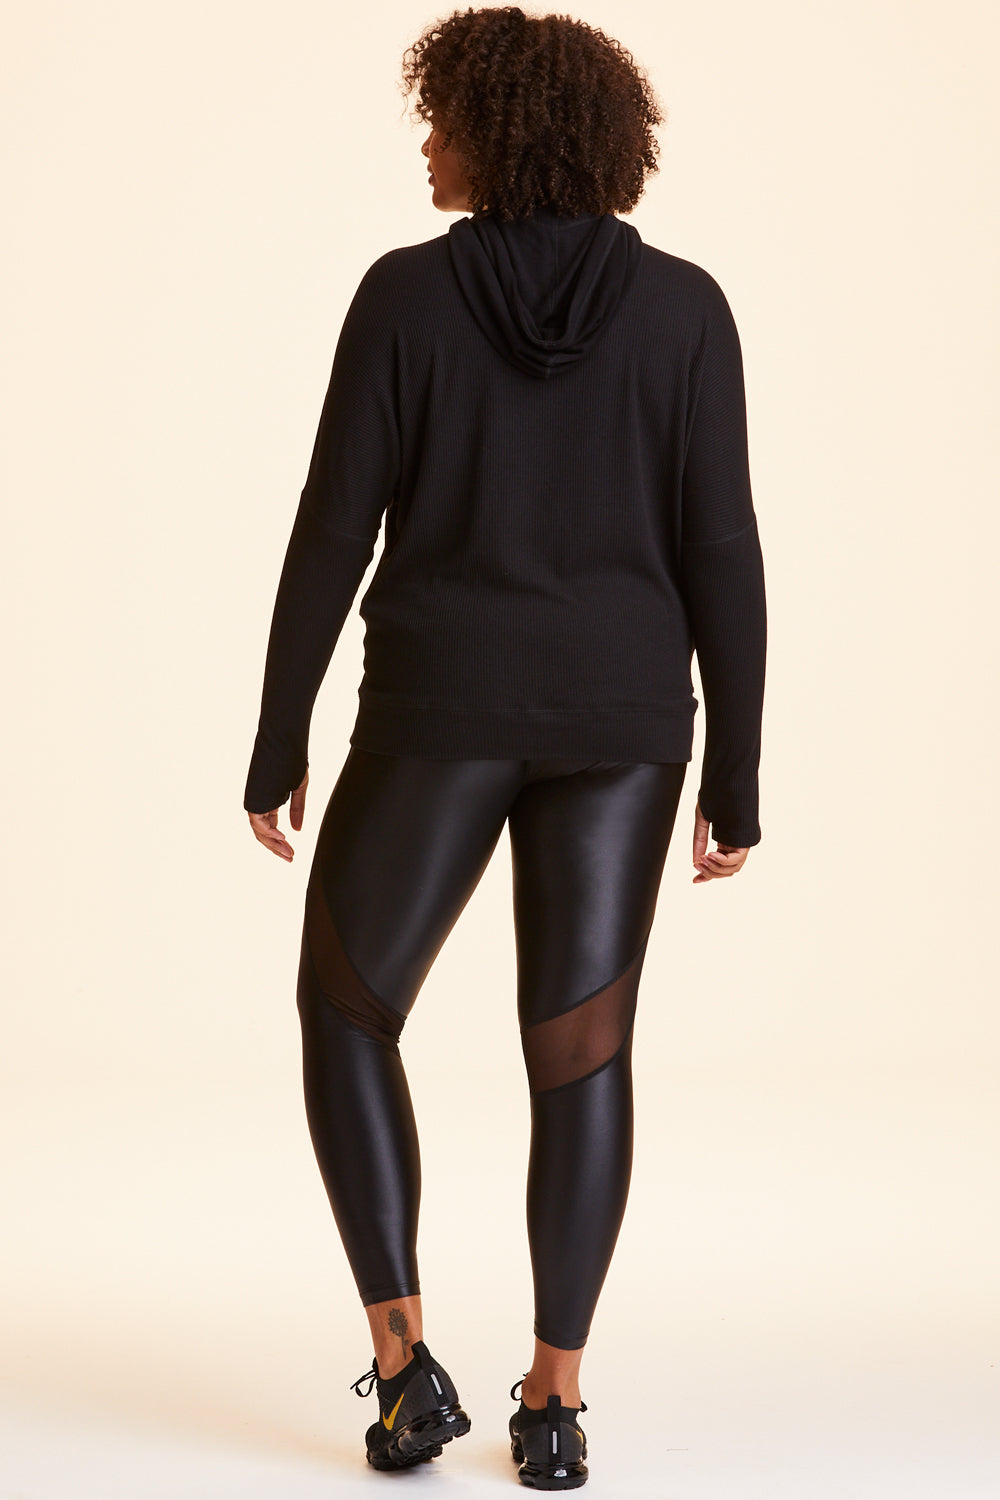 Back view of Alala Women's Luxury Athleisure black hoodie